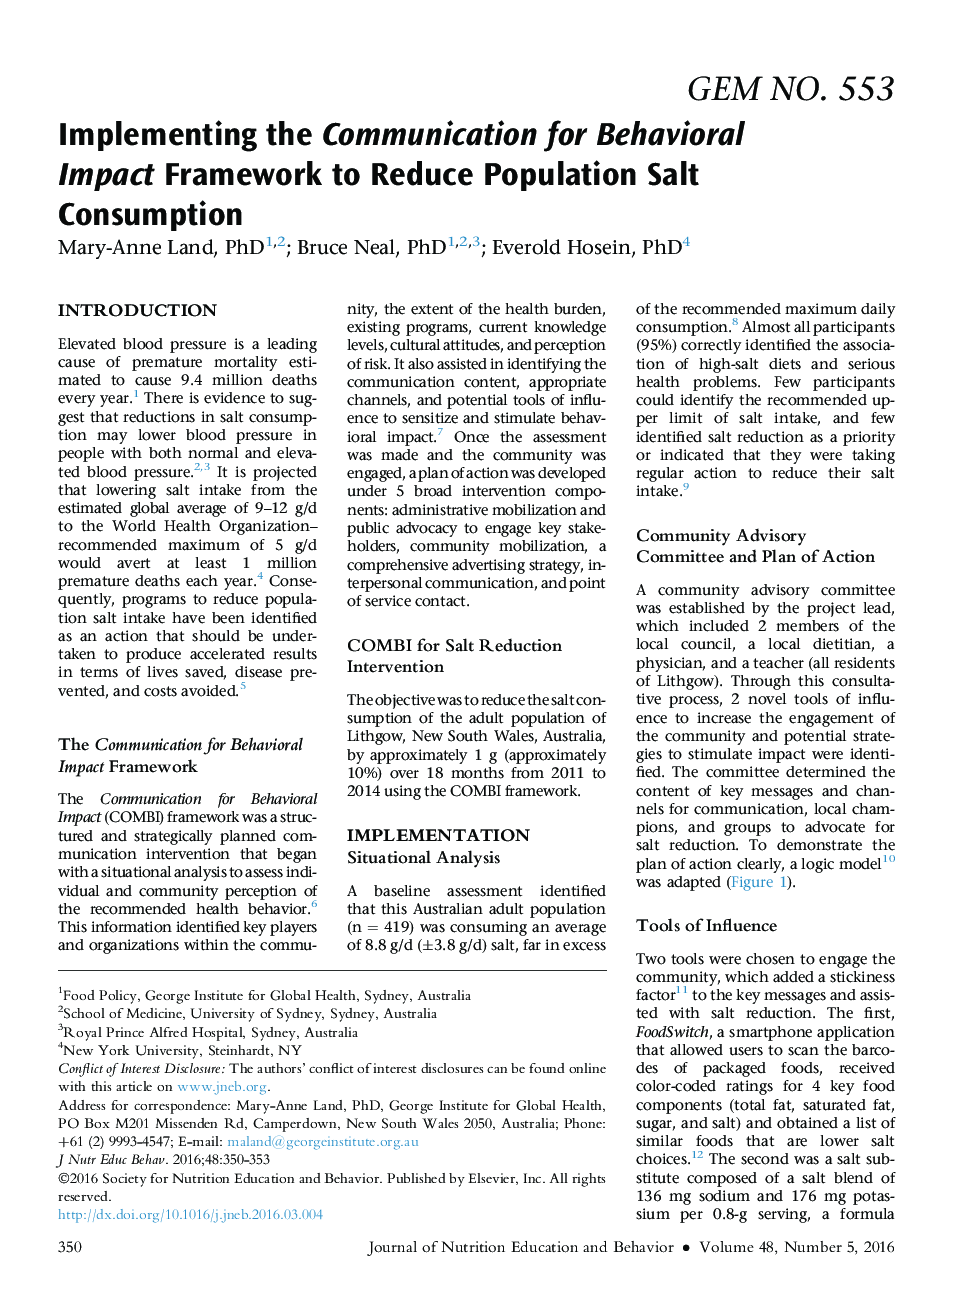 پیاده سازی ارتباطات برای چارچوب تاثیر رفتاری برای کاهش میزان مصرف نمک مصرفی 